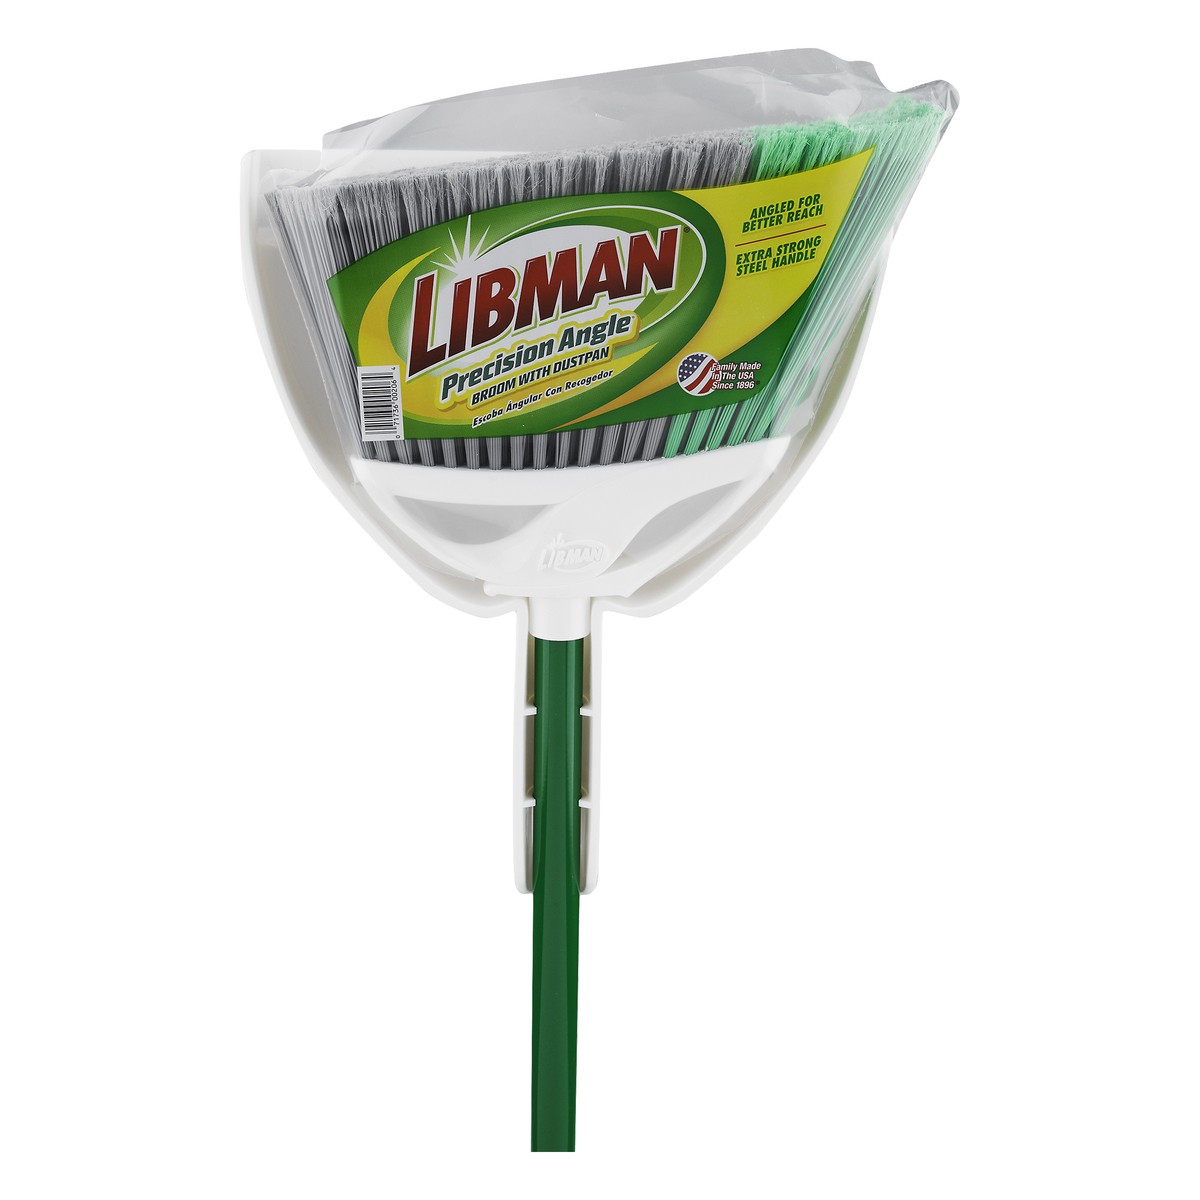 slide 5 of 5, Libman Precision Angle Broom With Dustpan, 1 ea